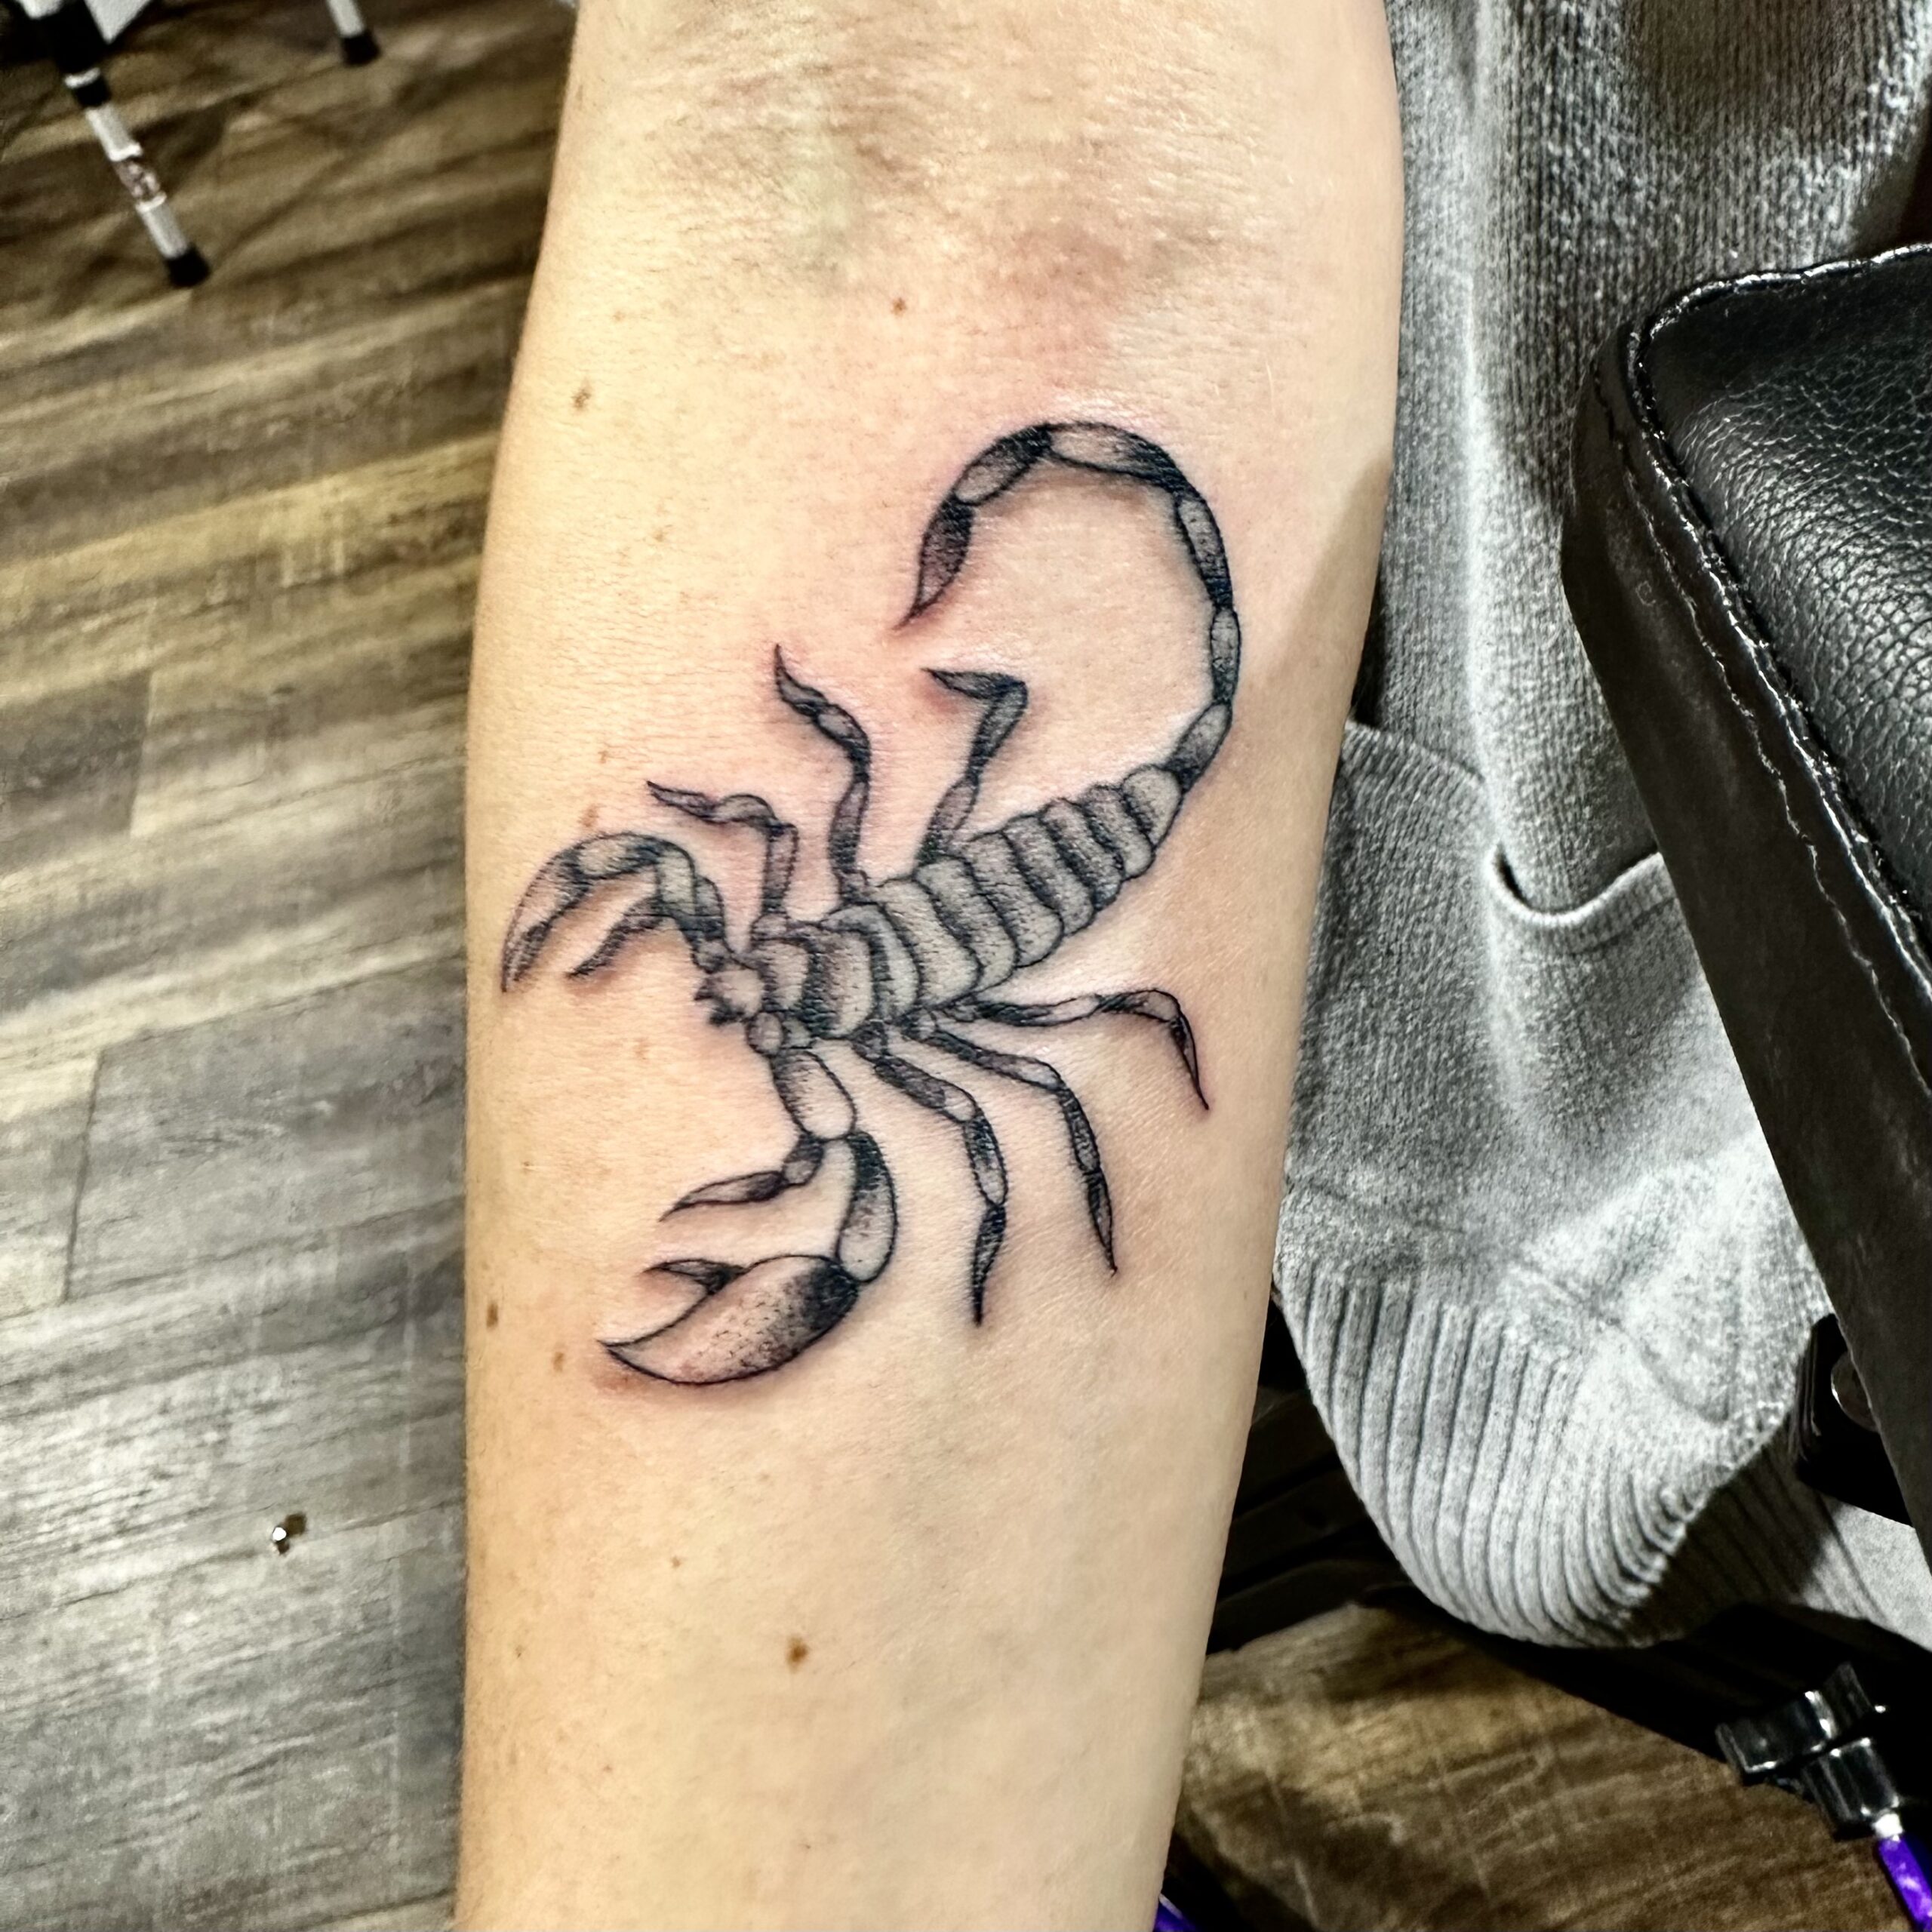 Tattoo of a black scorpion